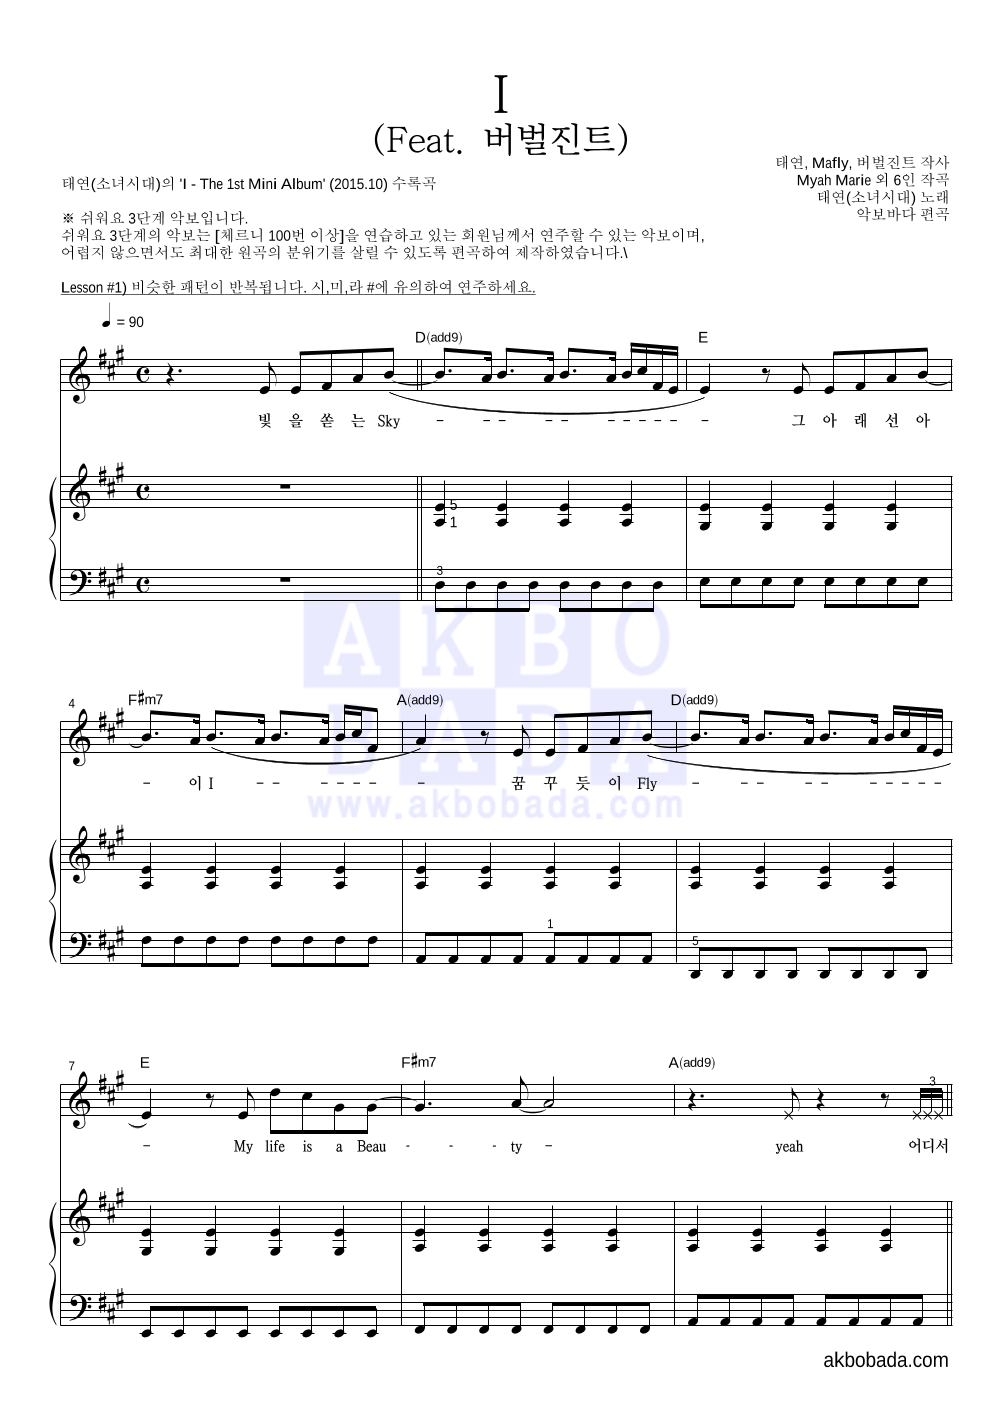 태연 - I (Feat. 버벌진트) 피아노3단-쉬워요 악보 